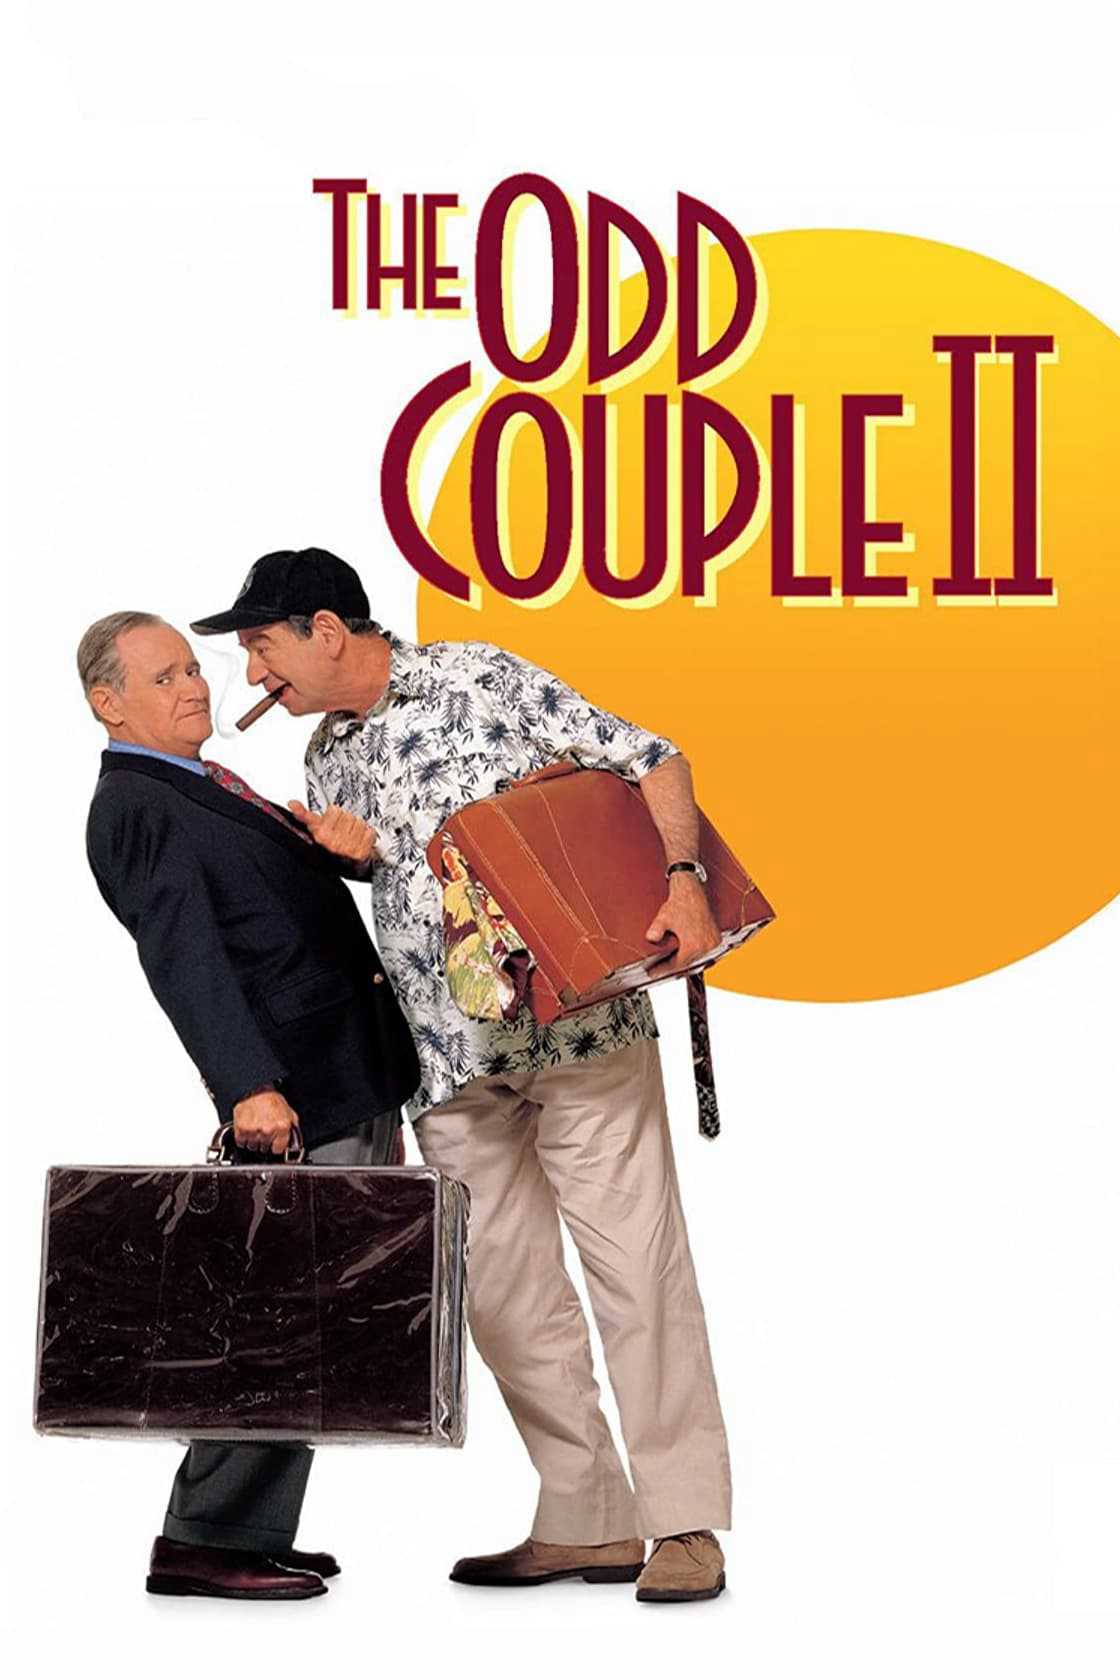 The odd couple ii - The odd couple ii